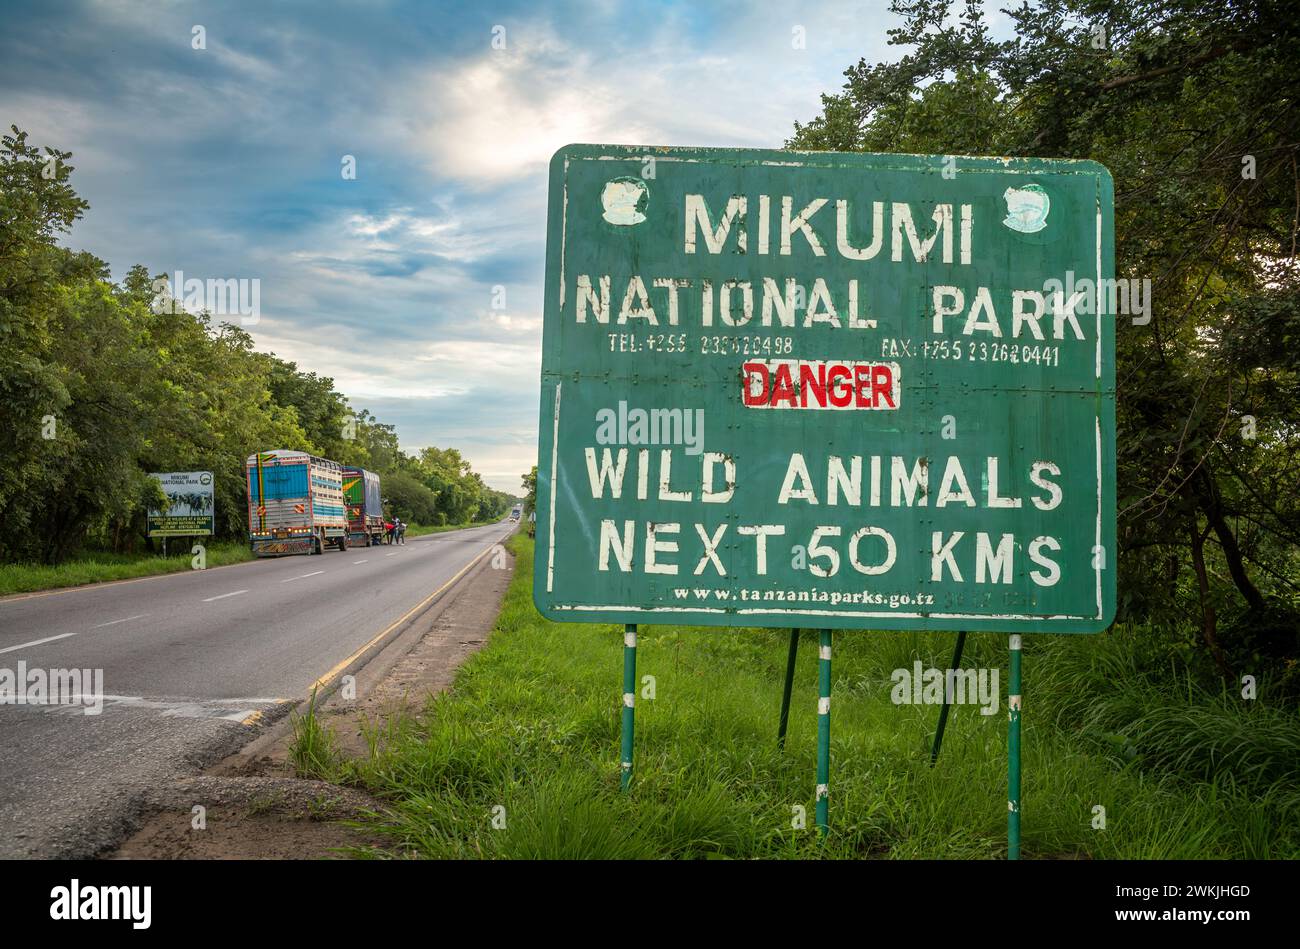 Camions sur le côté de l'autoroute A7 près du panneau d'entrée du parc national de Mikumi en Tanzanie Banque D'Images